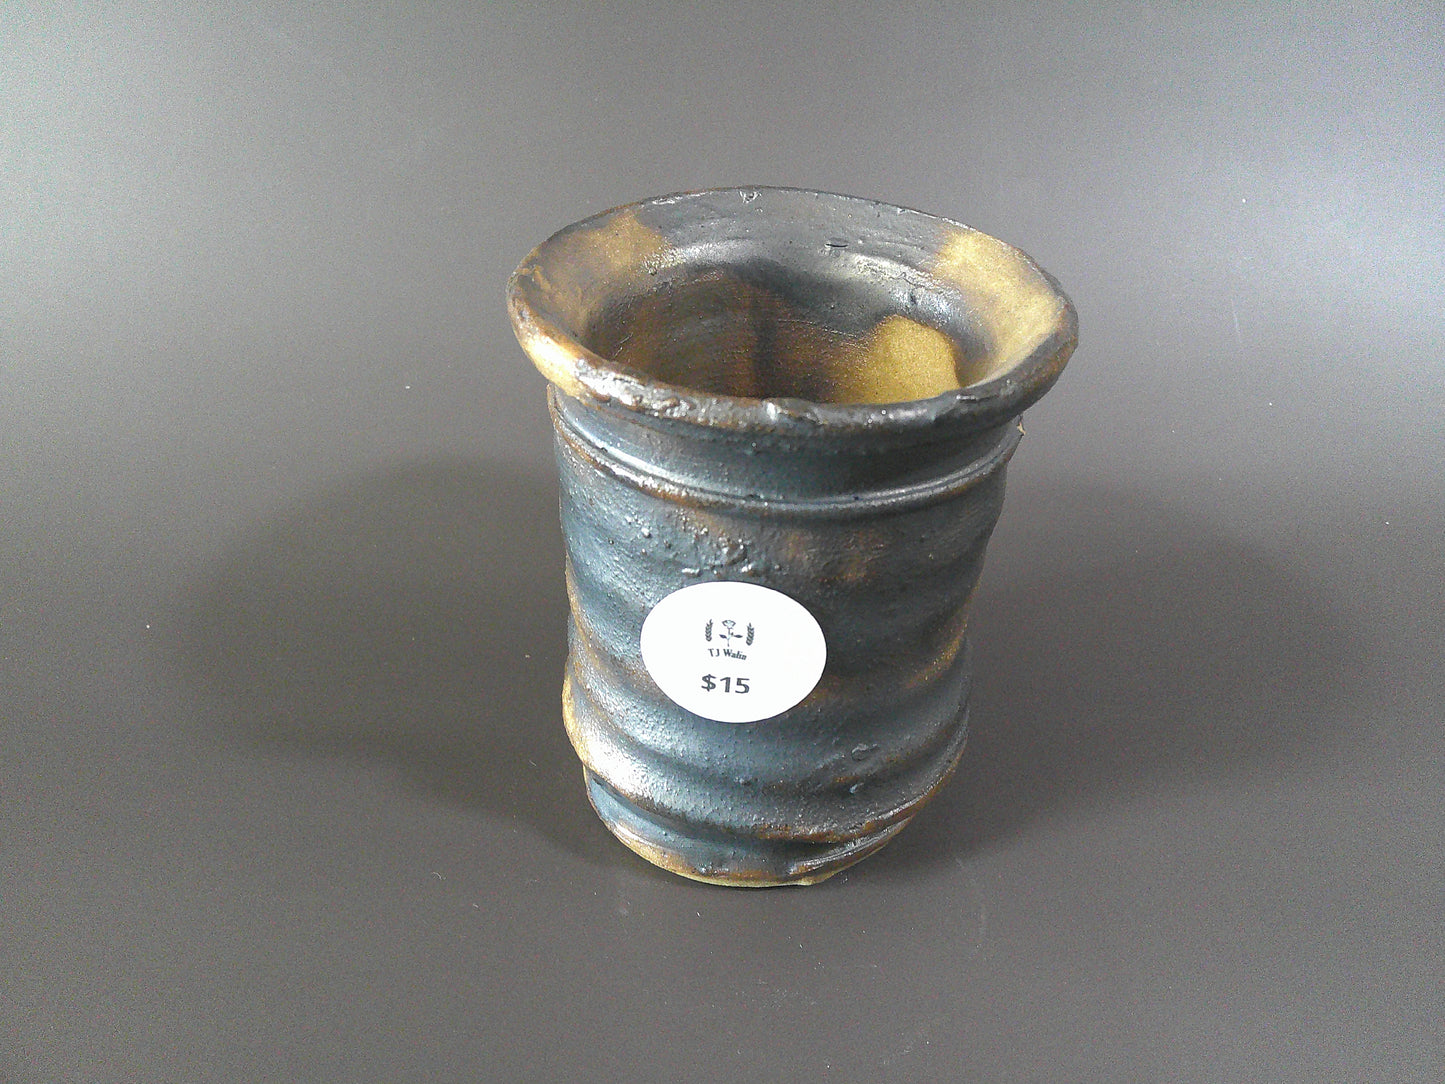 Black/Gold Pottery piece $15